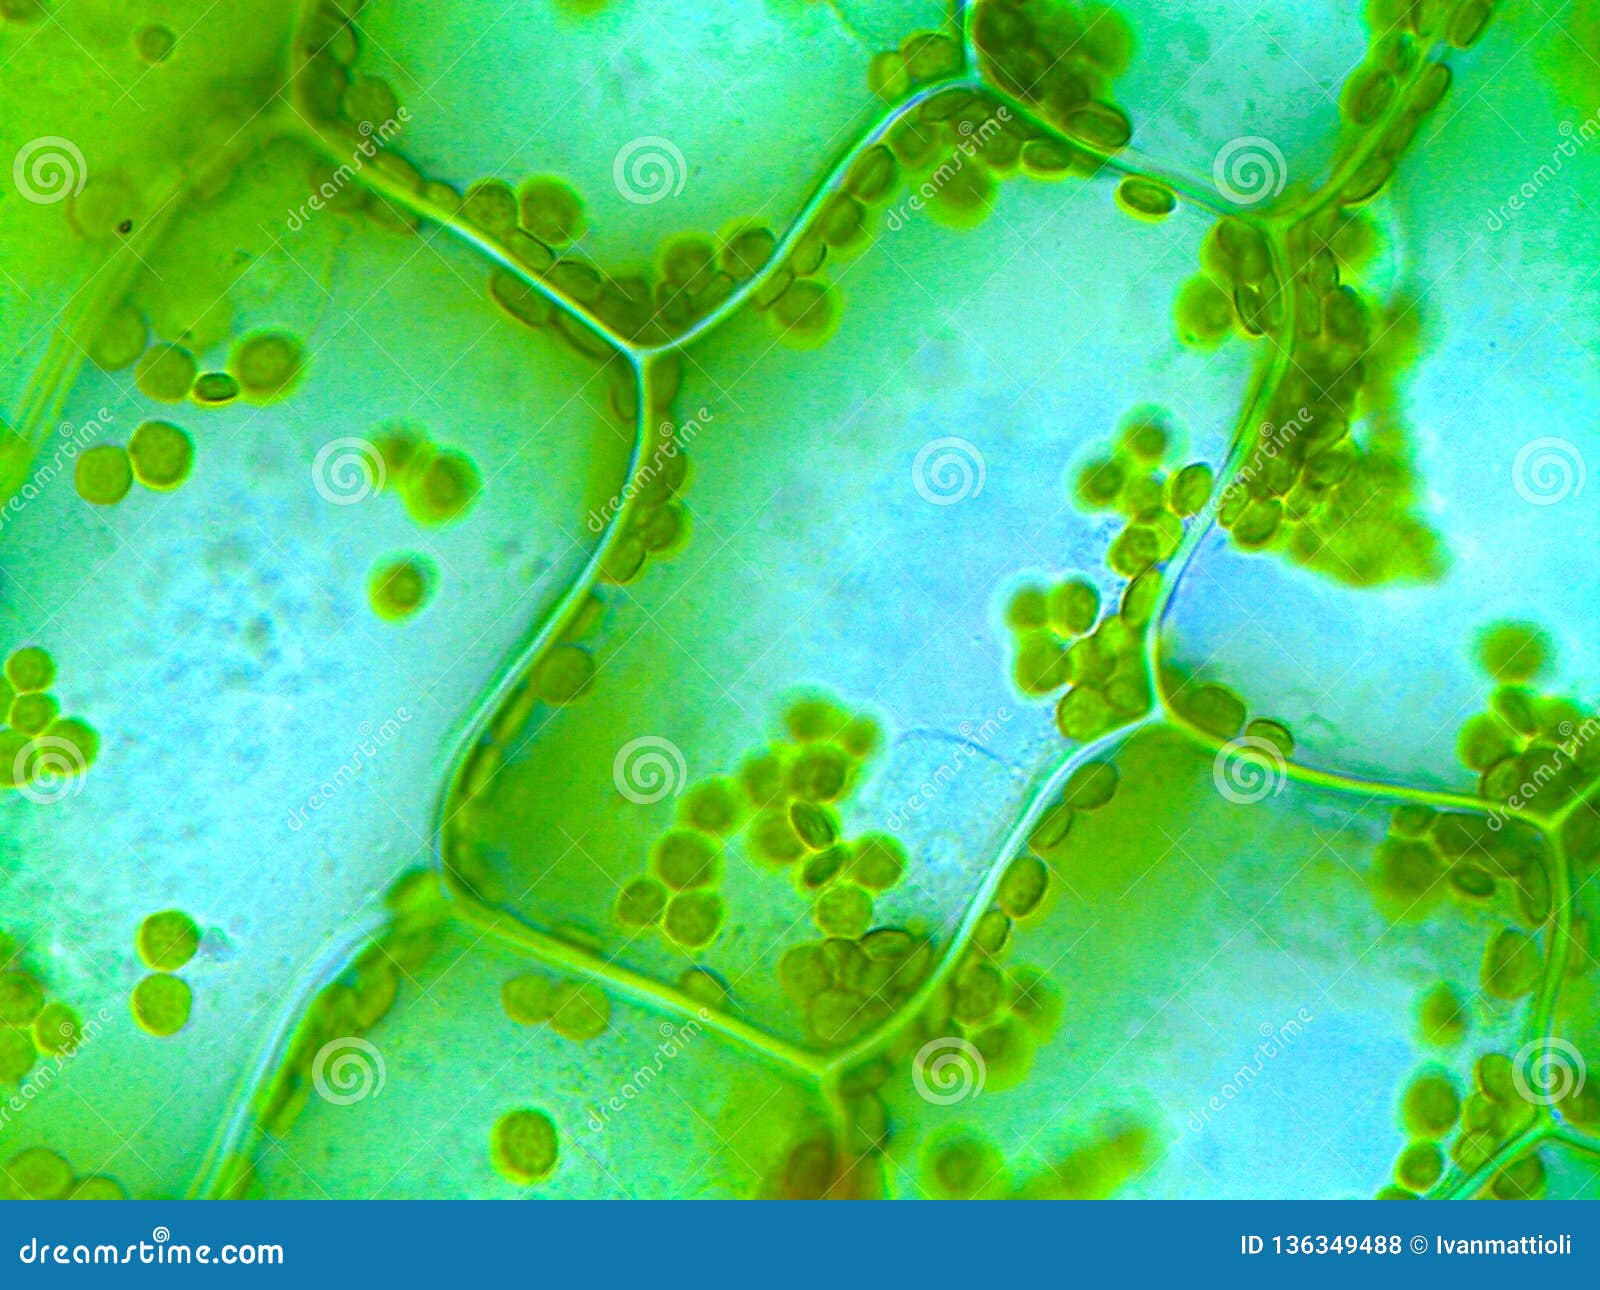 Клетка бурой водоросли. Хлорофилл у спирогиры. Водоросль Элодея под микроскопом. Диатомеи водоросли под микроскопом.